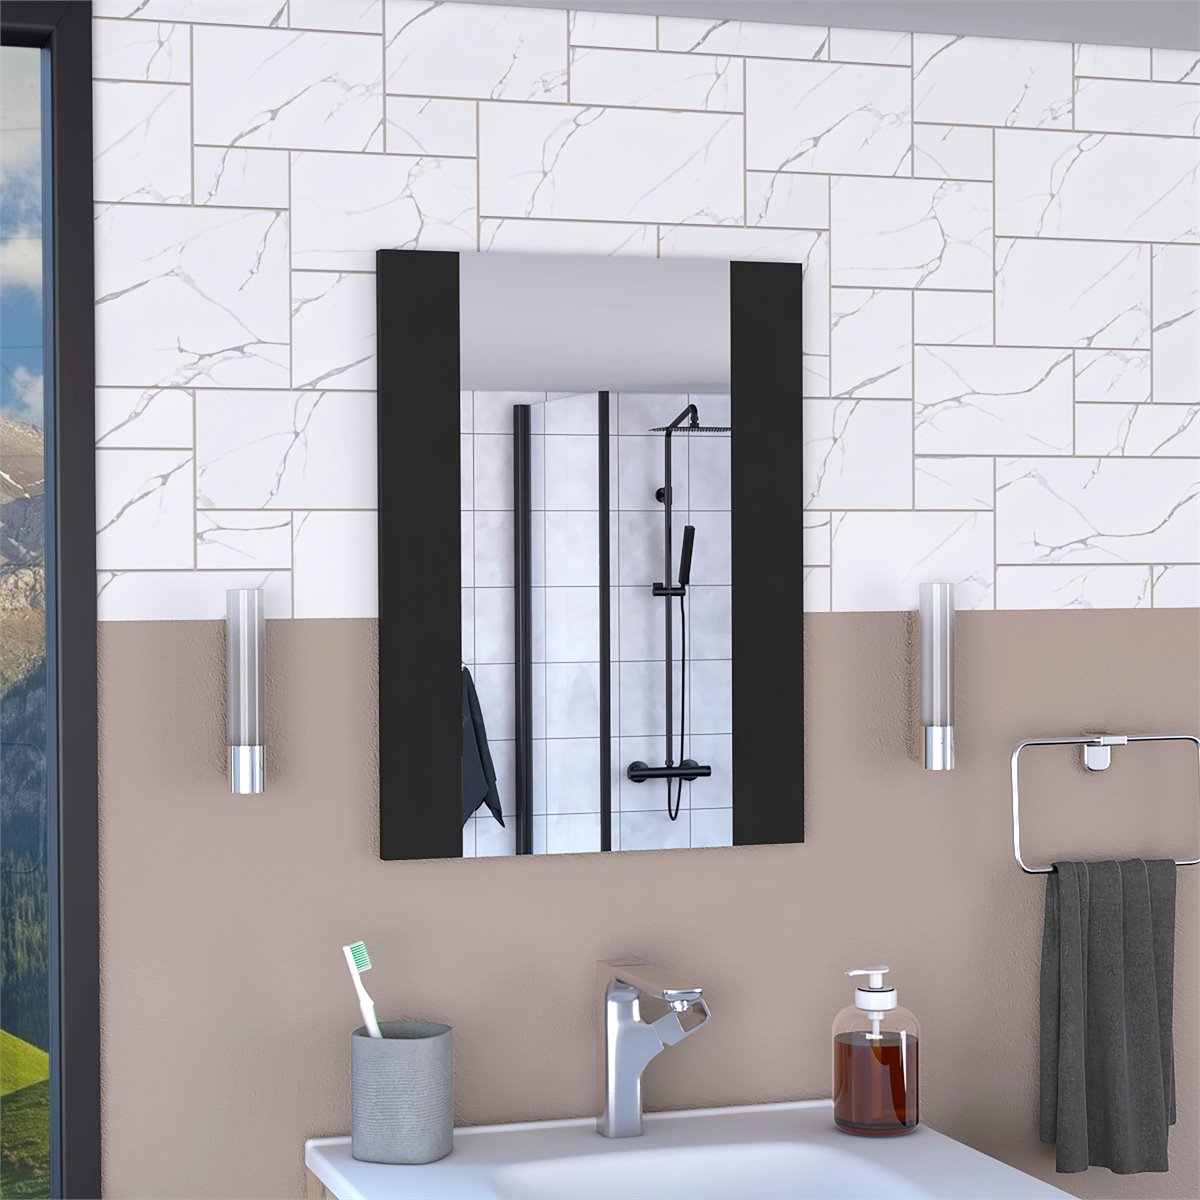 Espejo de baño flotante Madrid 60 cm alto x 45 cm ancho x 1.9 cm fondo 